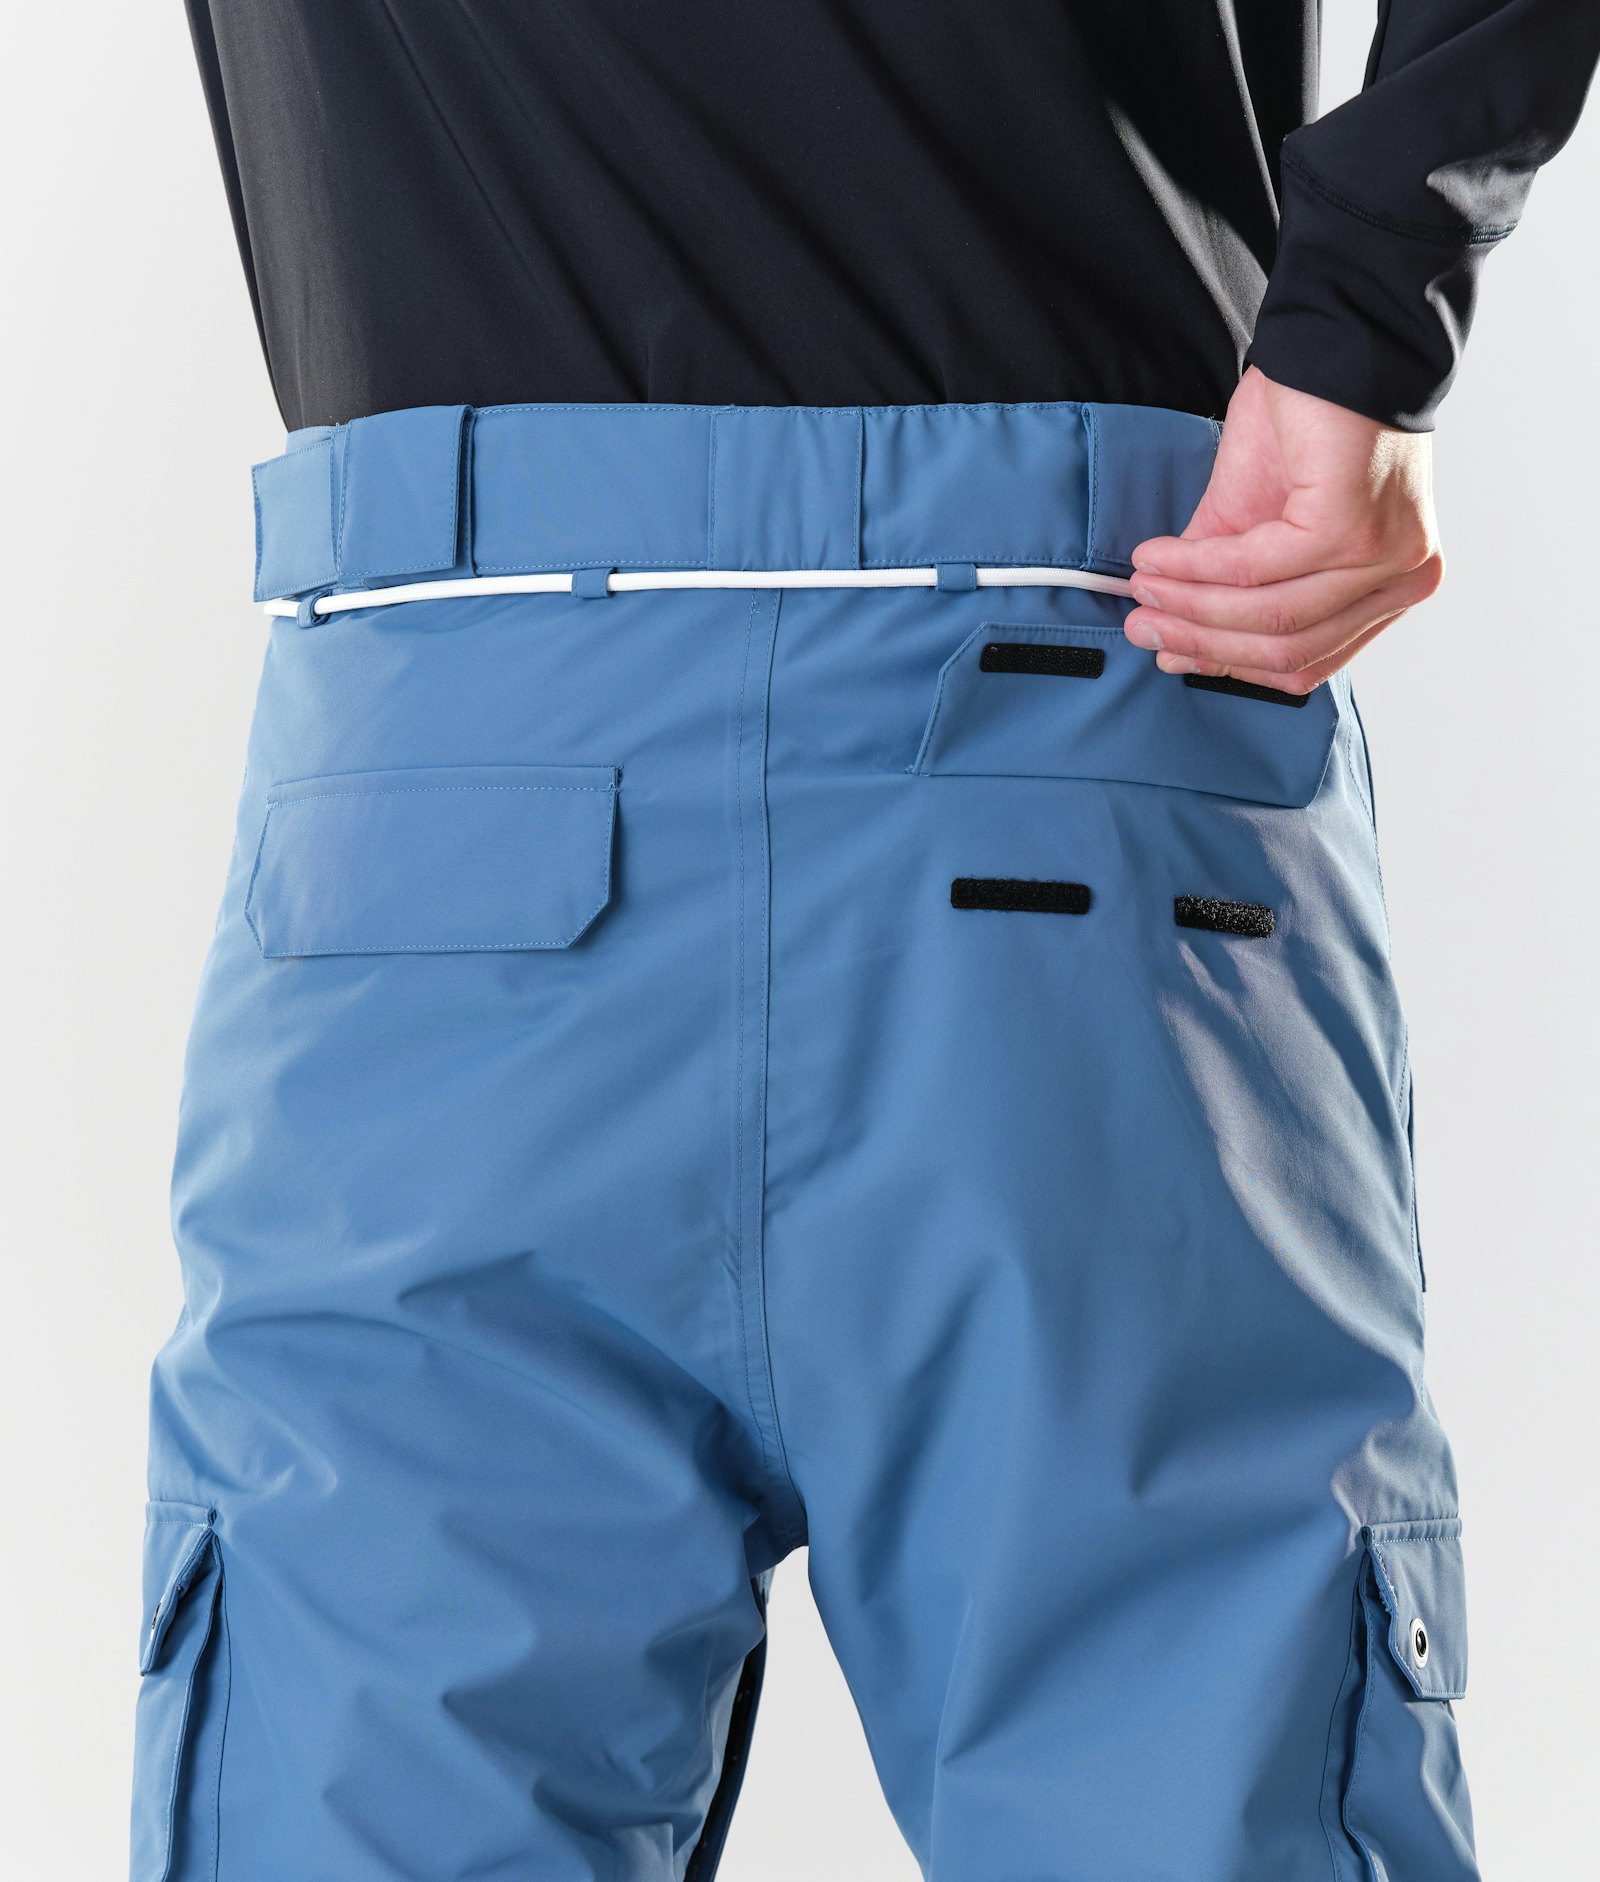 Dope Iconic 2020 Pantalones Esquí Hombre Blue Steel